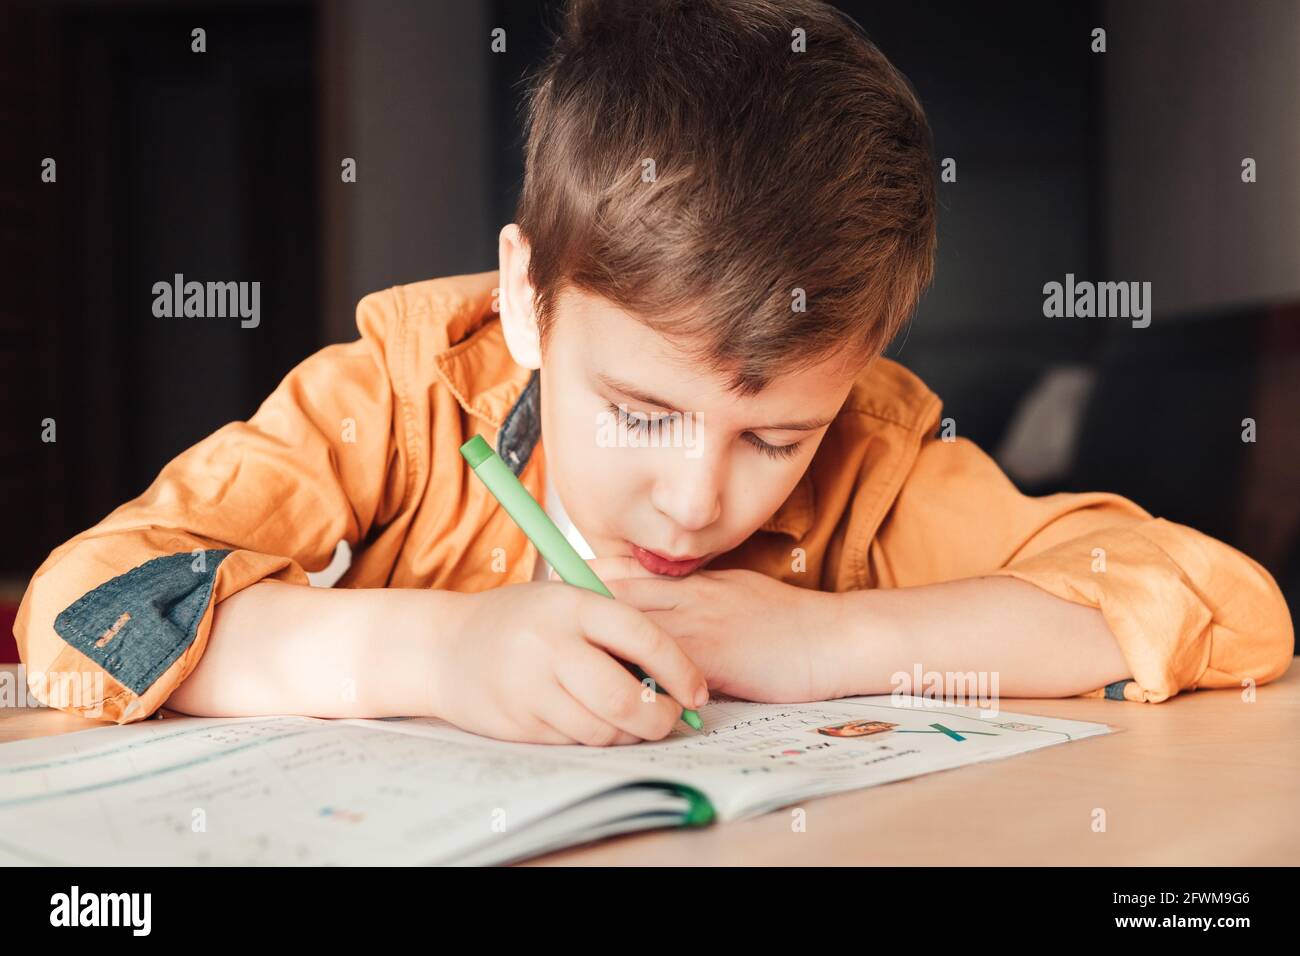 Intelligenter 7 Jahre alter Junge, der Hausaufgaben schreibt und am Schreibtisch sitzt. Kinderschrift im Notizbuch. Nahaufnahme Stockfoto